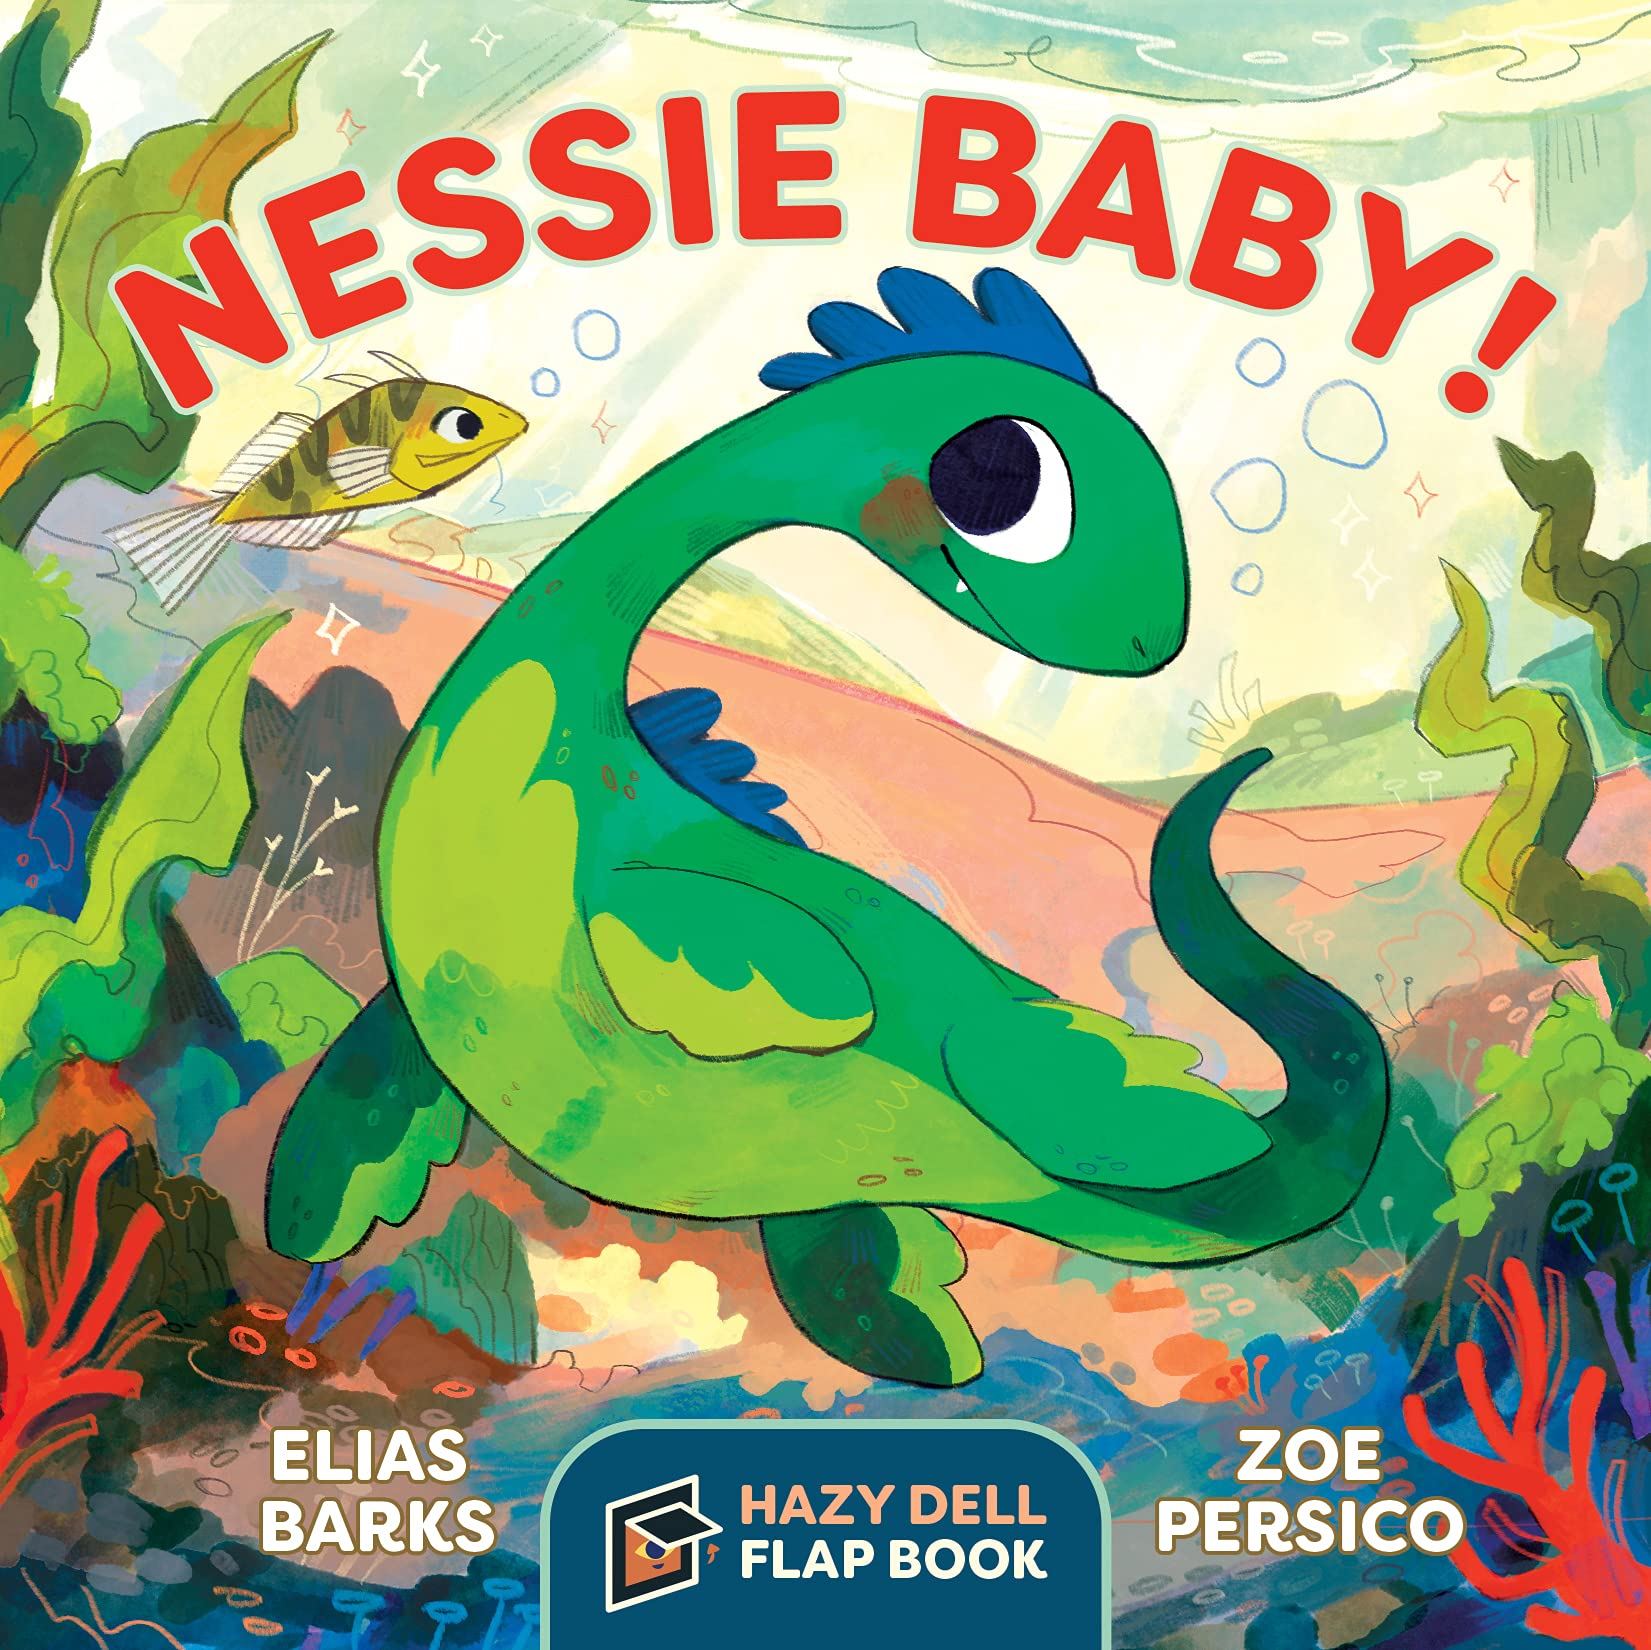 Nessie Baby